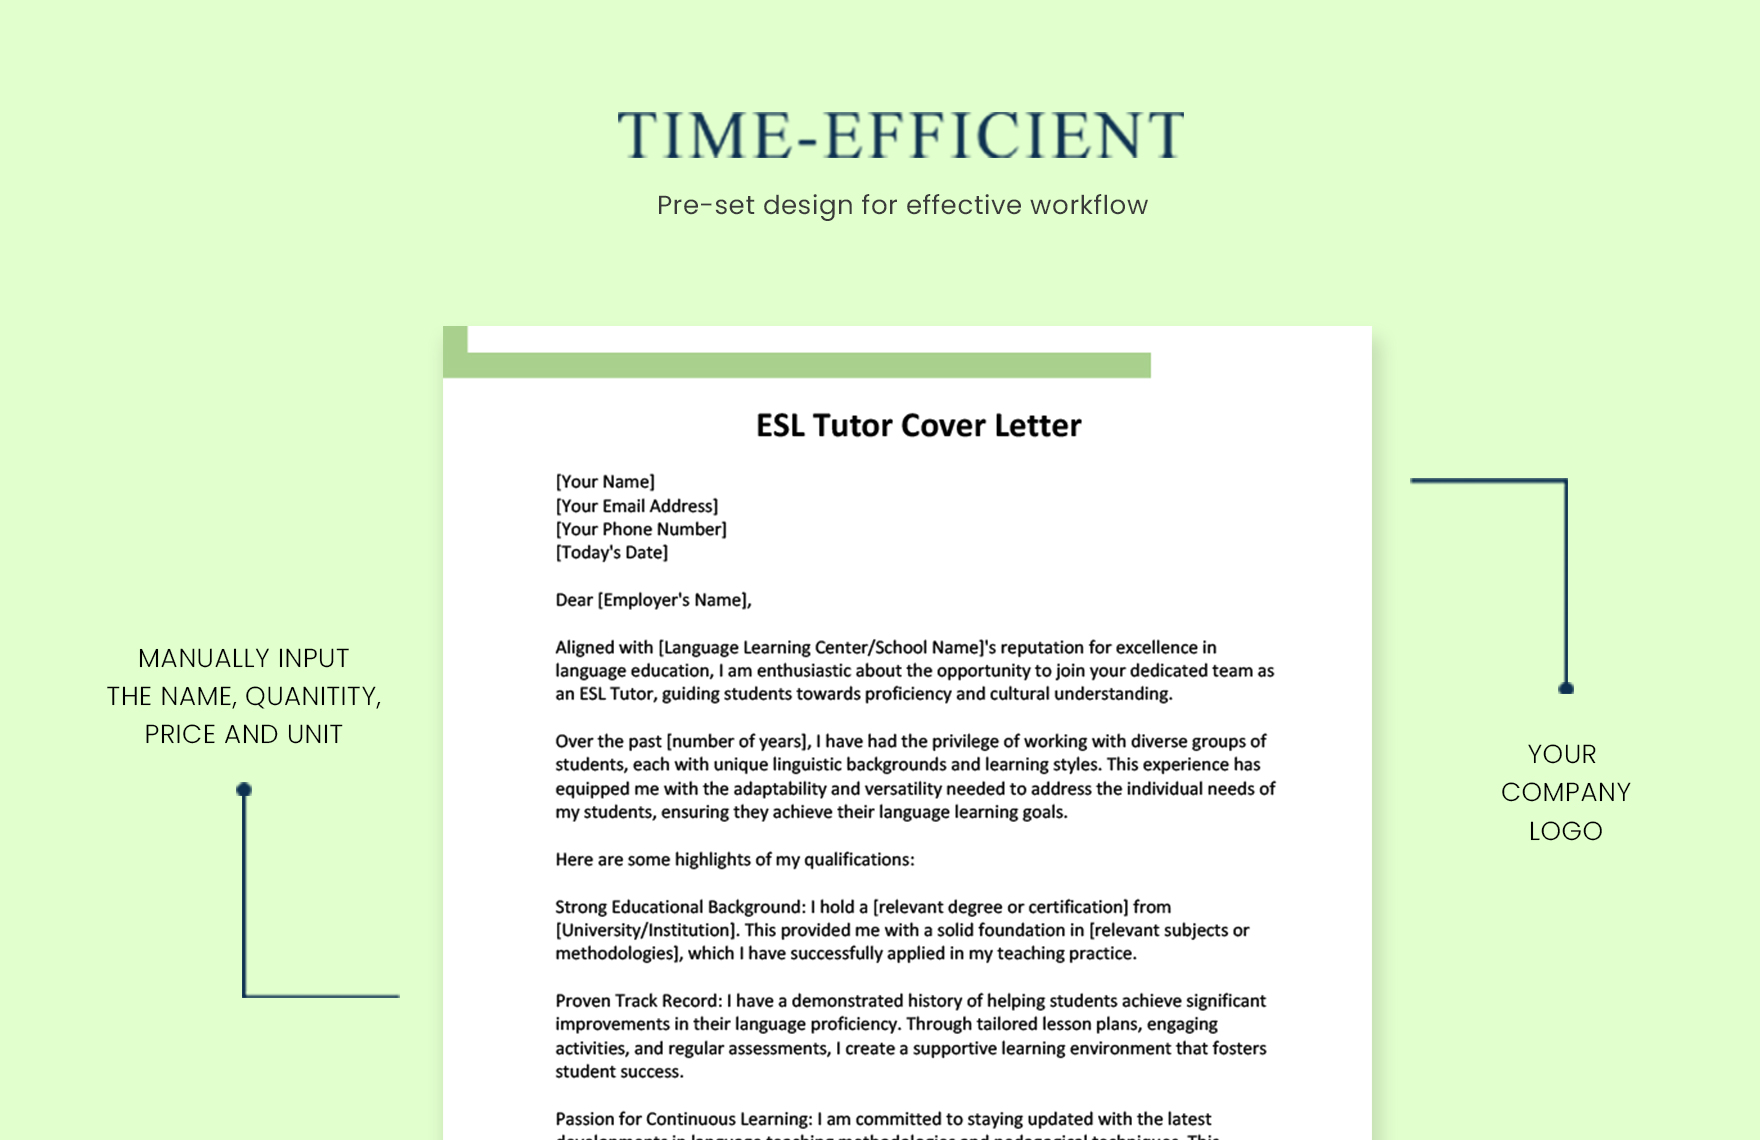 ESL Tutor Cover Letter